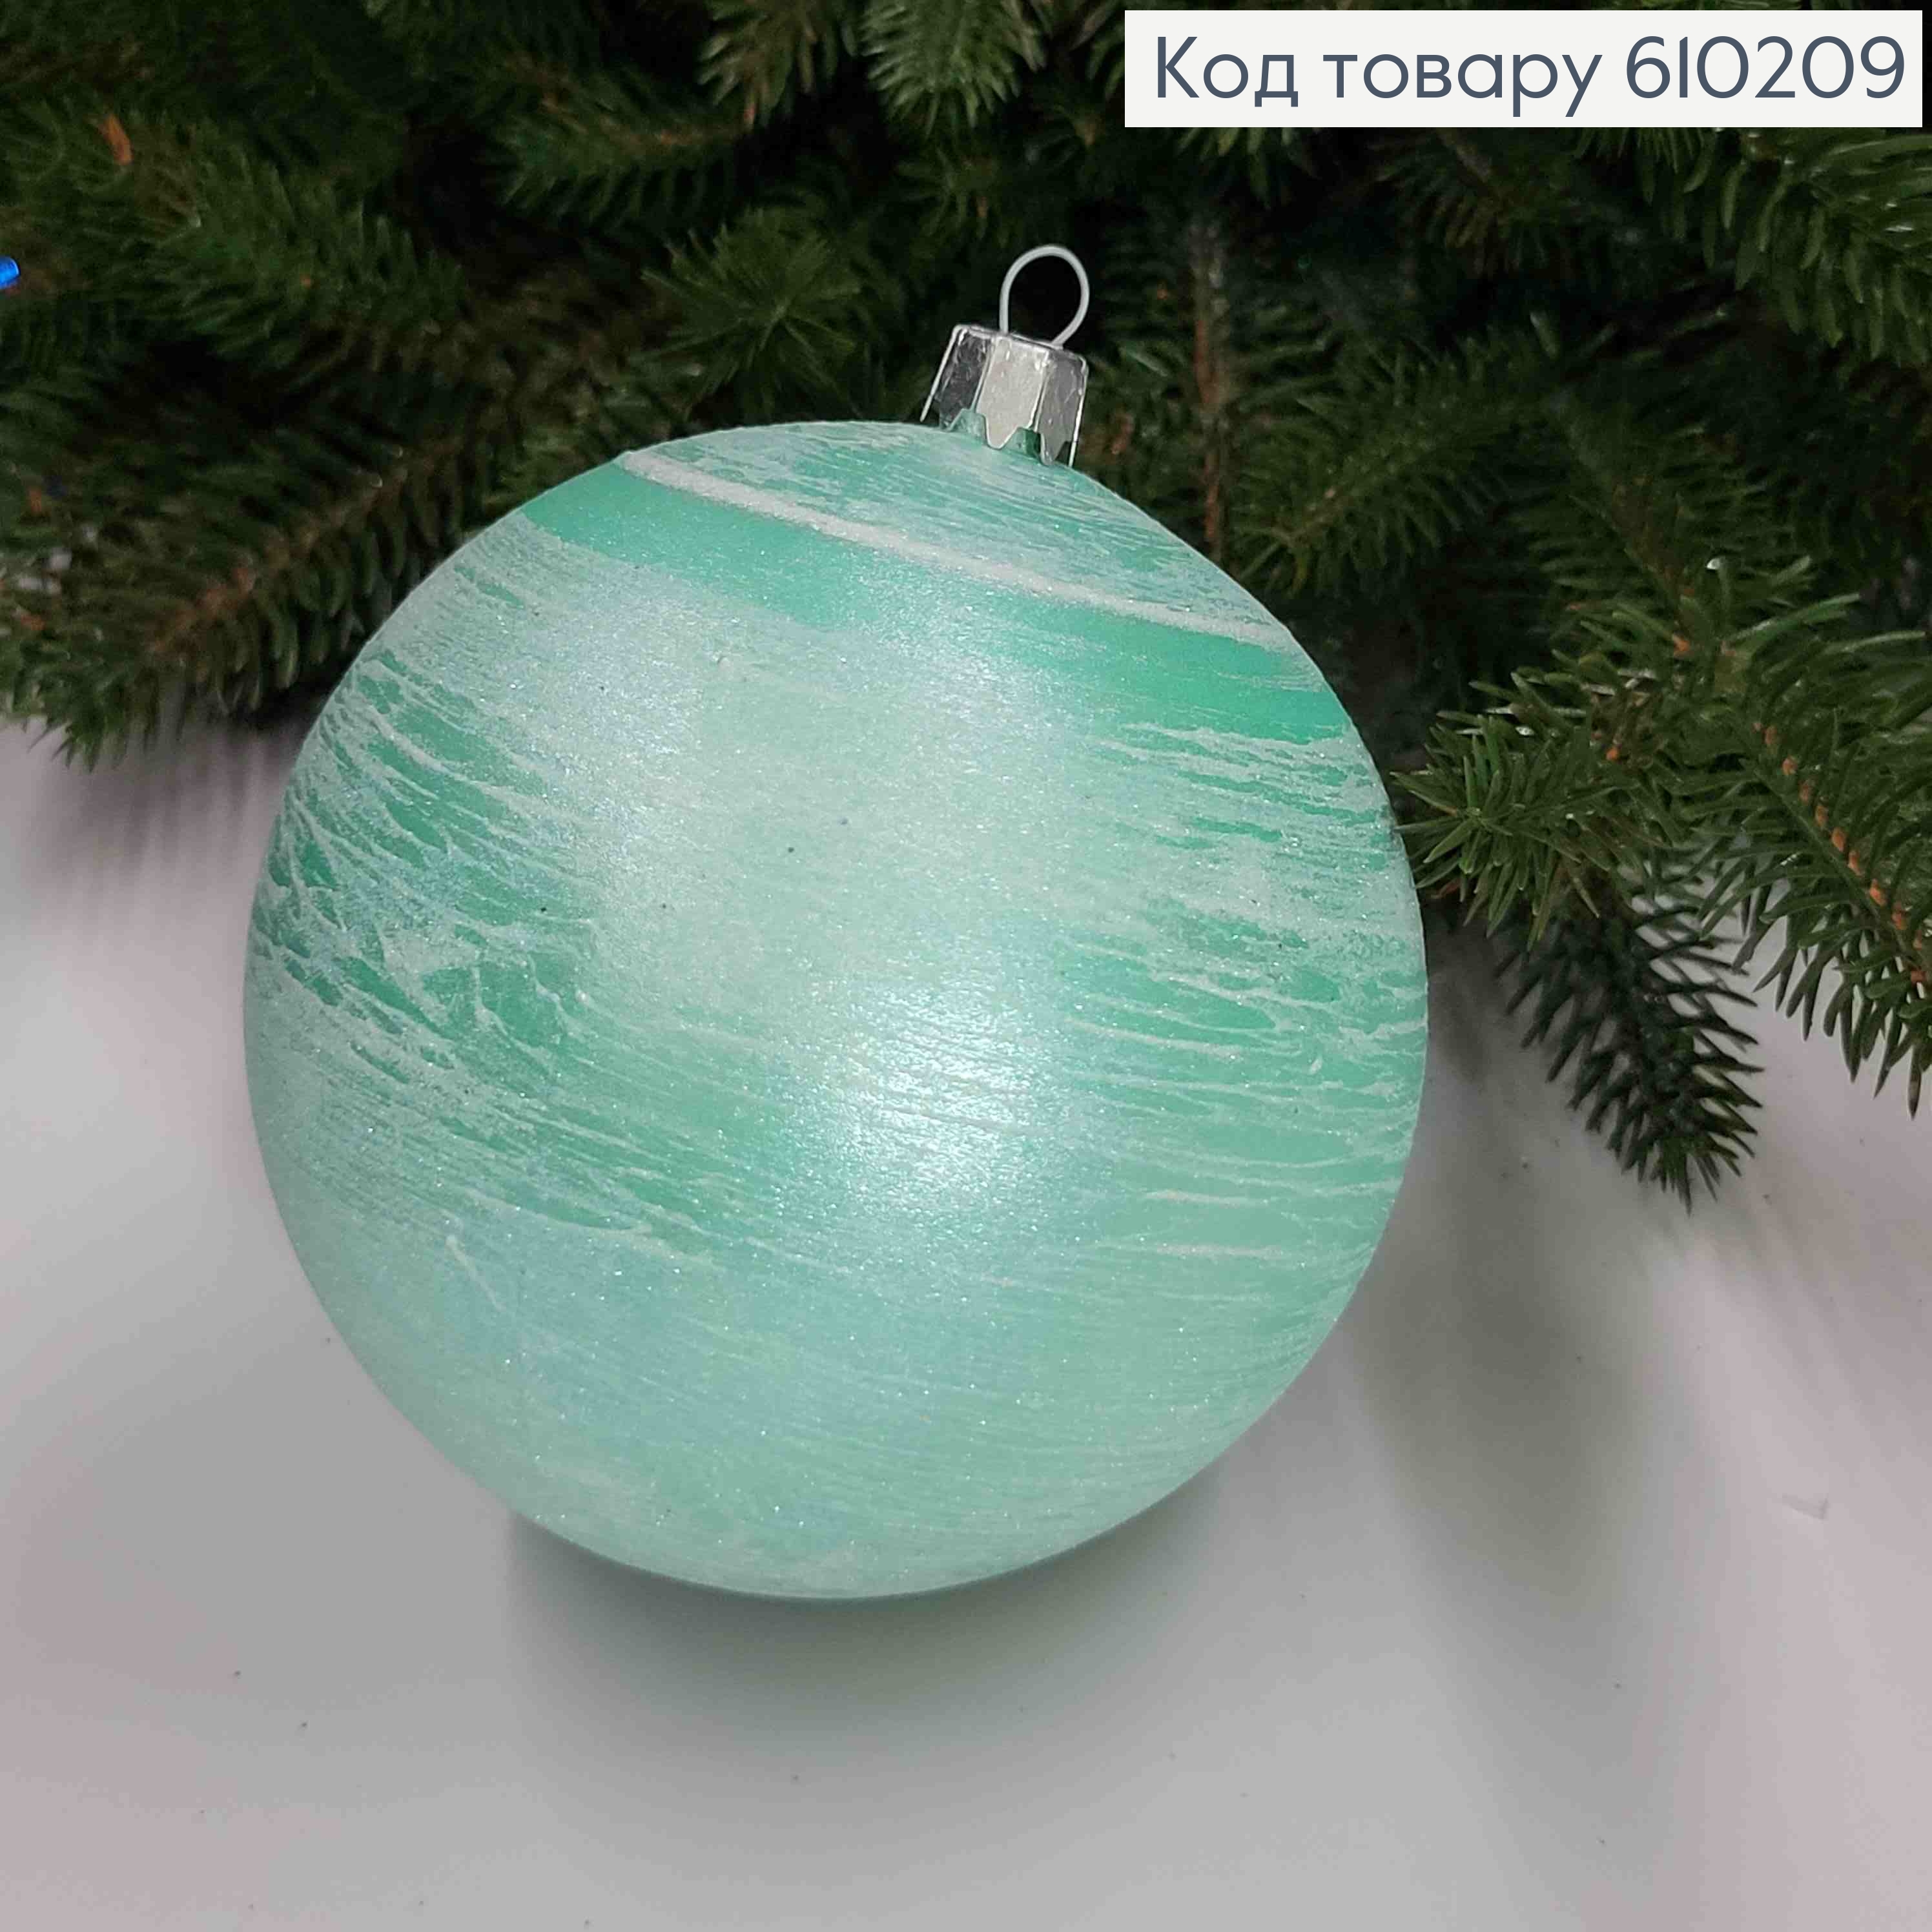 Іграшка куля 100мм ХУРДЕЛИЦЯ,  колір М"ЯТА, Україна 610209 фото 2